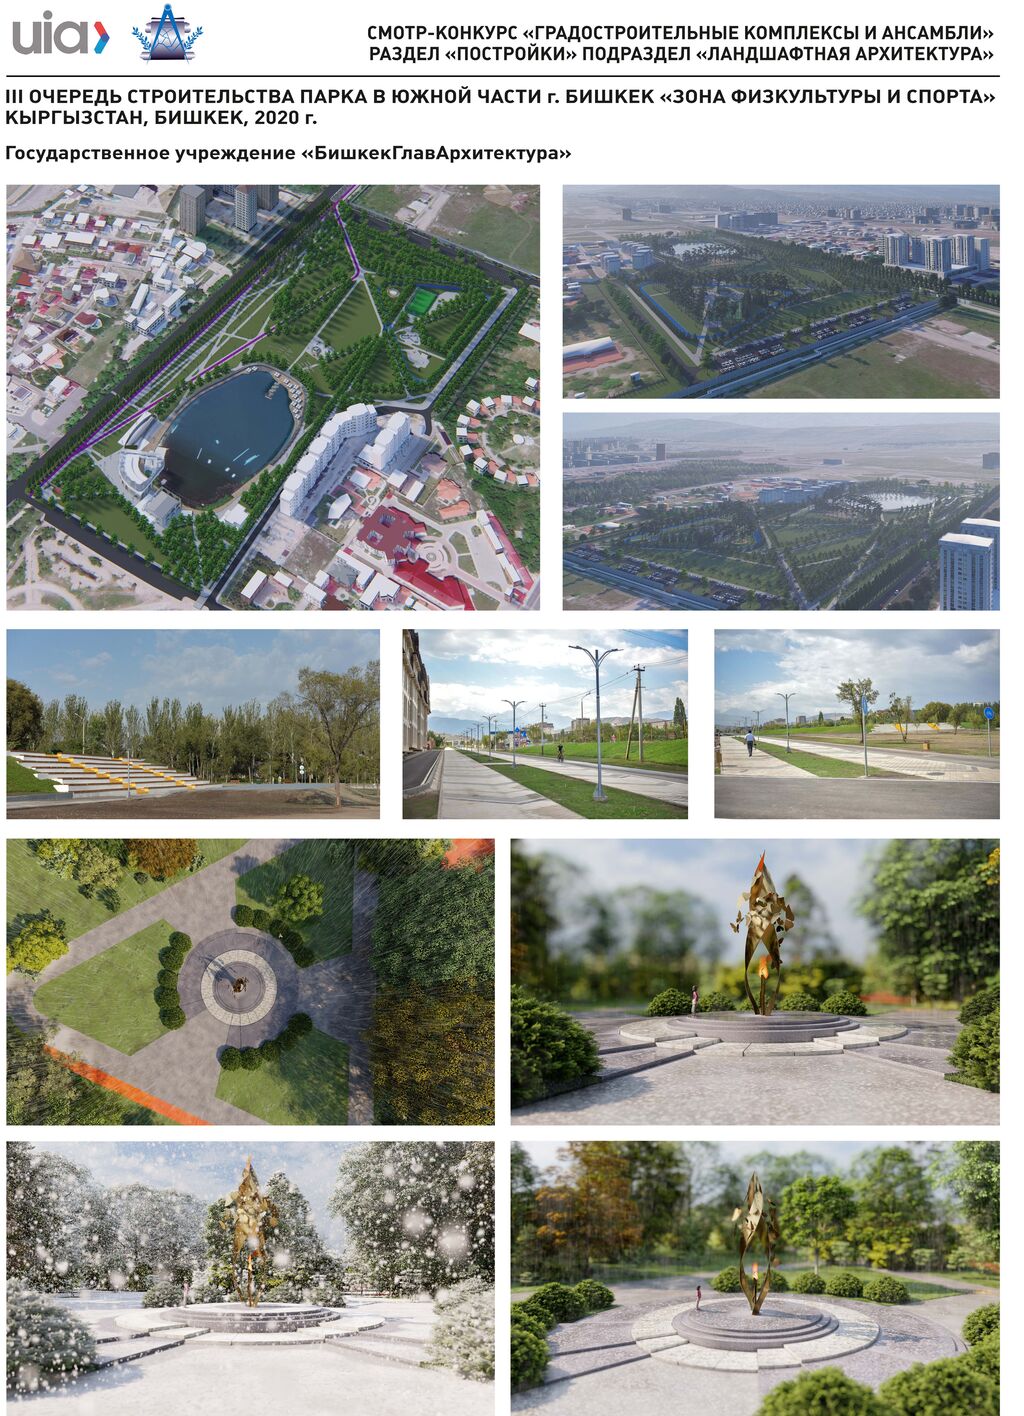 74. Третья очередь строительства парка ЗОНА ФИЗКУЛЬТУРЫ И СПОРТА, Бишкек, Кыргызстан